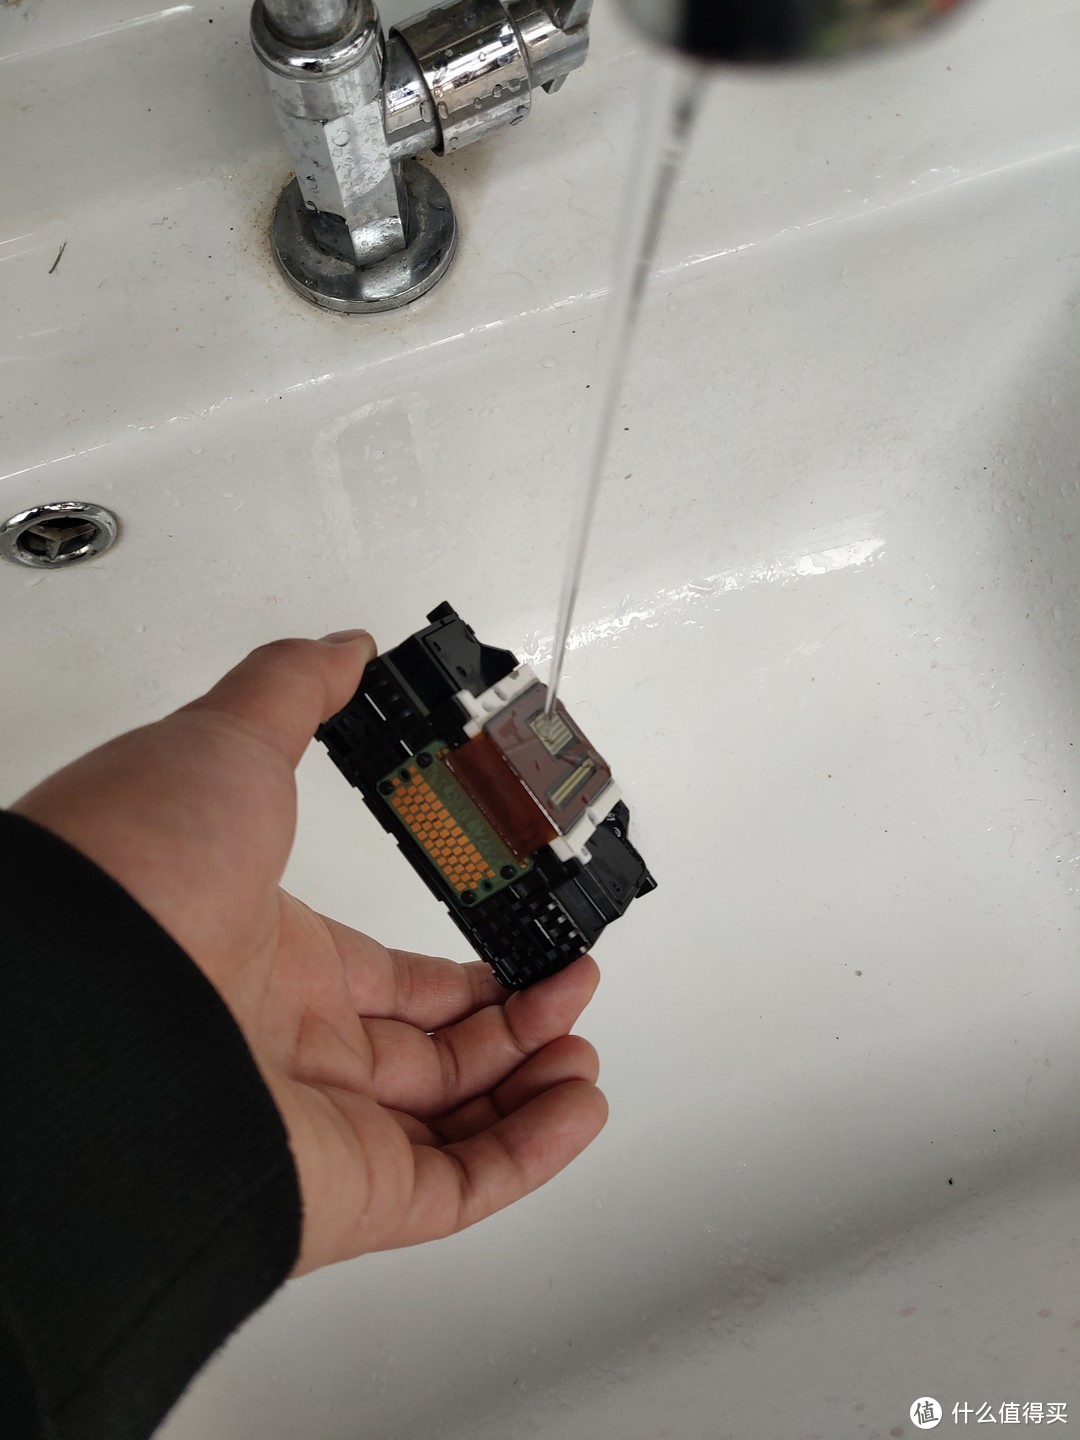 第二天拿清水冲洗，避免水流到那块电路板上，不过流上去问题也不大，看了一下只是一块板子，上边没有任何元件，擦干一般不会有啥问题。